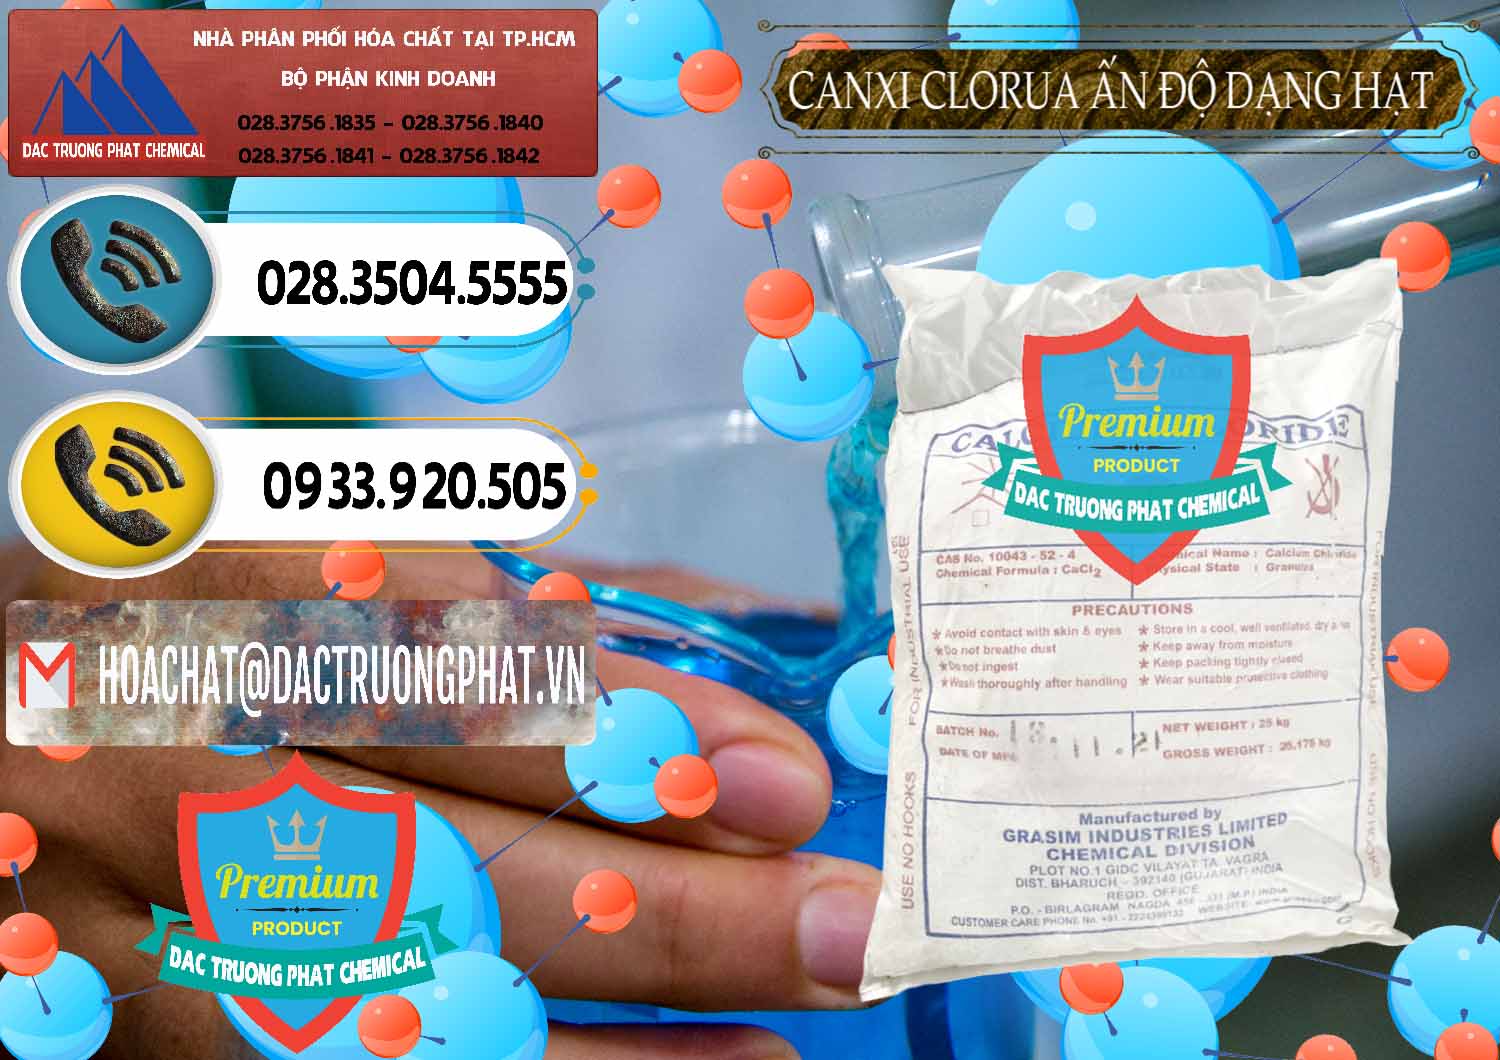 Đơn vị nhập khẩu - bán CaCl2 – Canxi Clorua Dạng Hạt Aditya Birla Grasim Ấn Độ India - 0418 - Đơn vị phân phối - cung cấp hóa chất tại TP.HCM - hoachatdetnhuom.vn